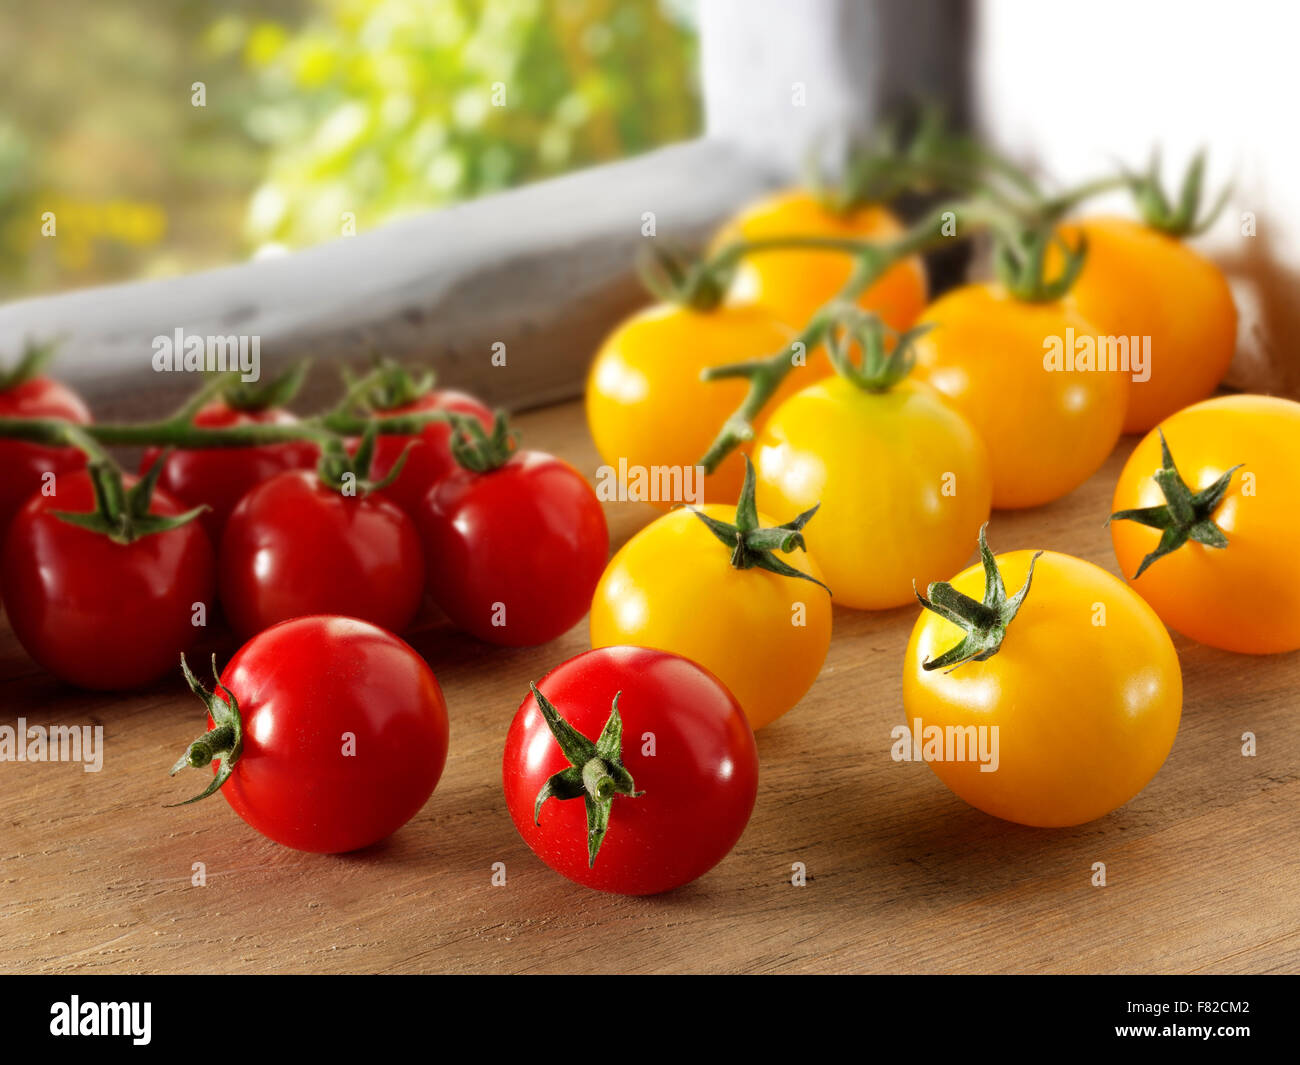 Mista fresca prelevata di colore giallo e rosso i pomodorini Foto Stock